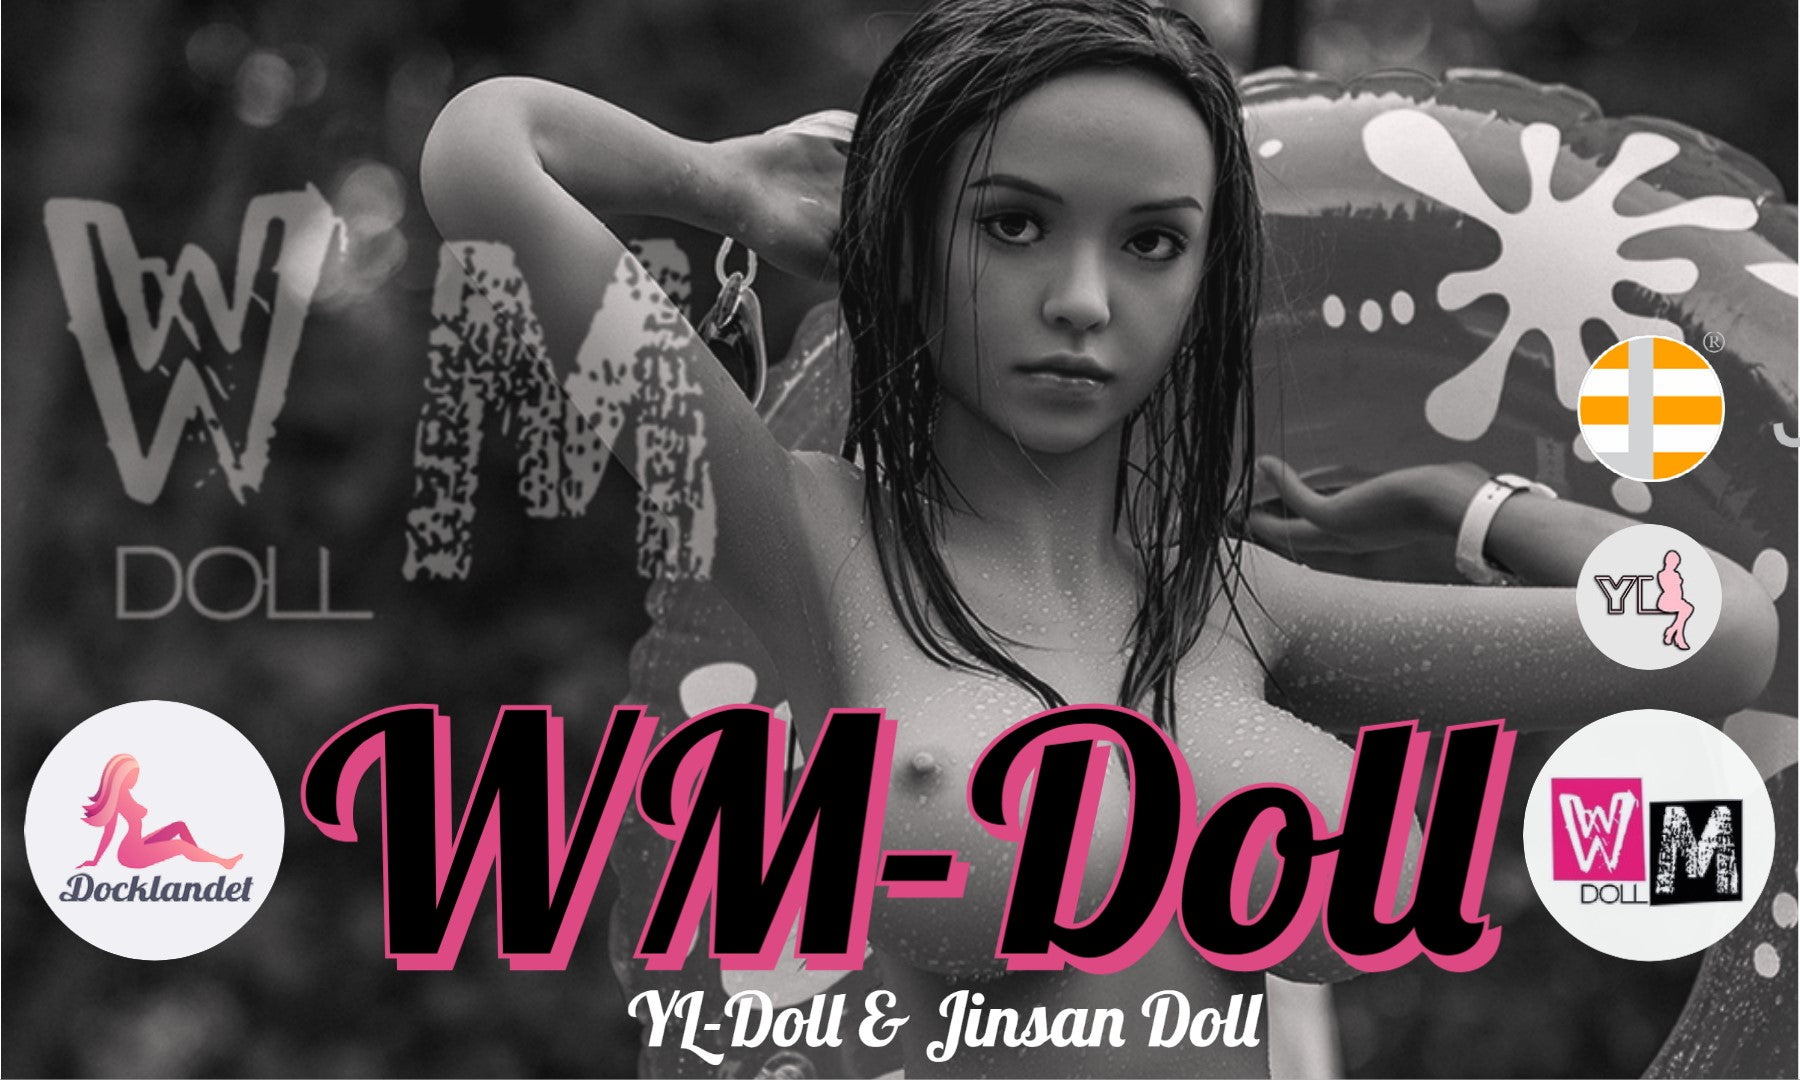 WM-Doll är experter på sexdockor och real dolls gjorda av TPE och silikon. En WM-Doll är alltid extremt detaljerad och av högsta kvalitet. Docklandet är officiell distributör av WM-dockor i Norden. Köp din real doll av Docklandet redan idag!